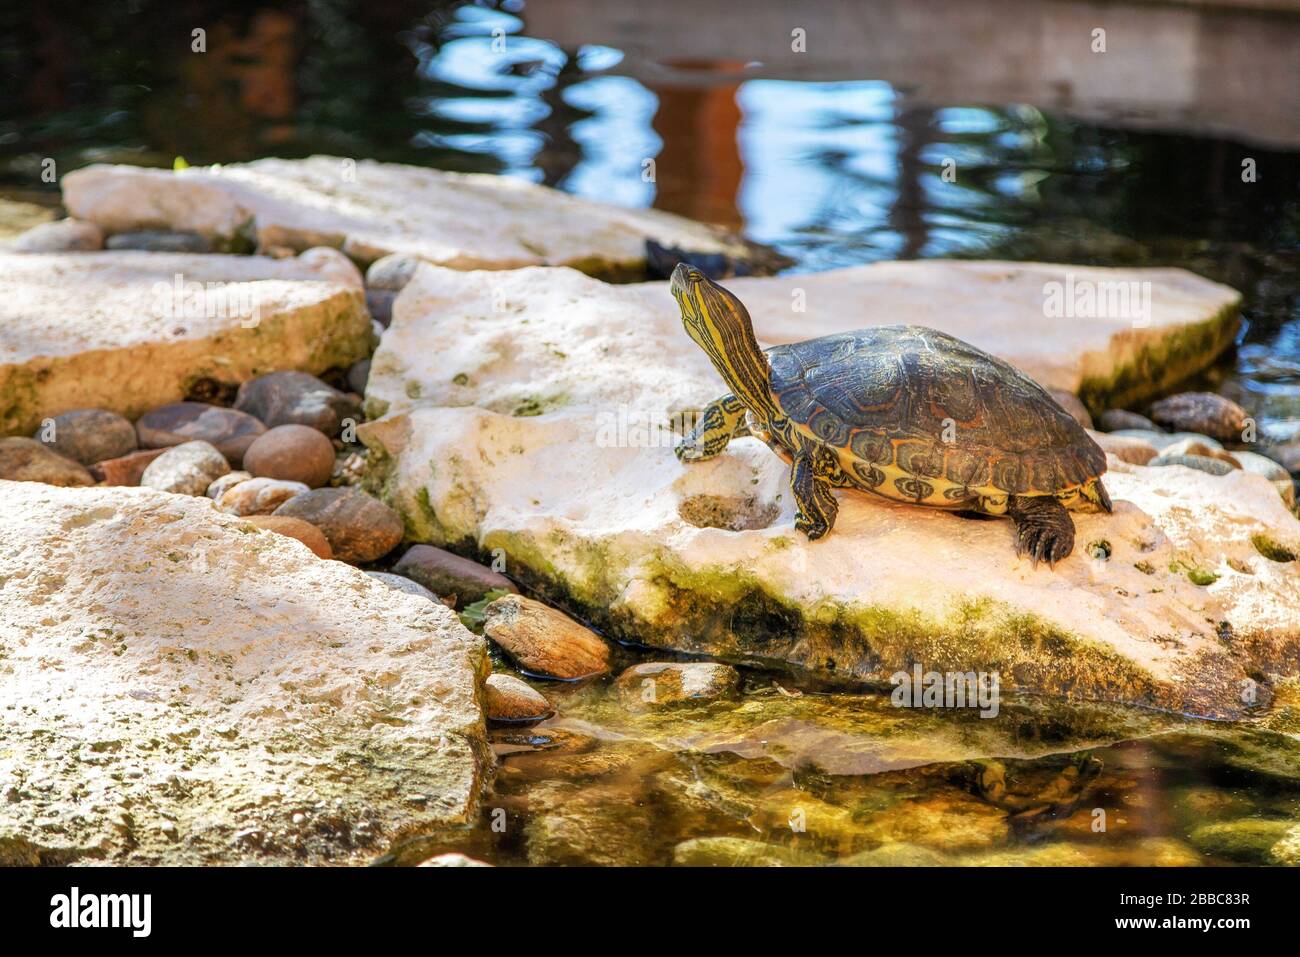 Tartaruga rossa in terrapina in un laghetto. La tartaruga è una specie semi acquatica appartenente alla famiglia Emydidae. Foto Stock